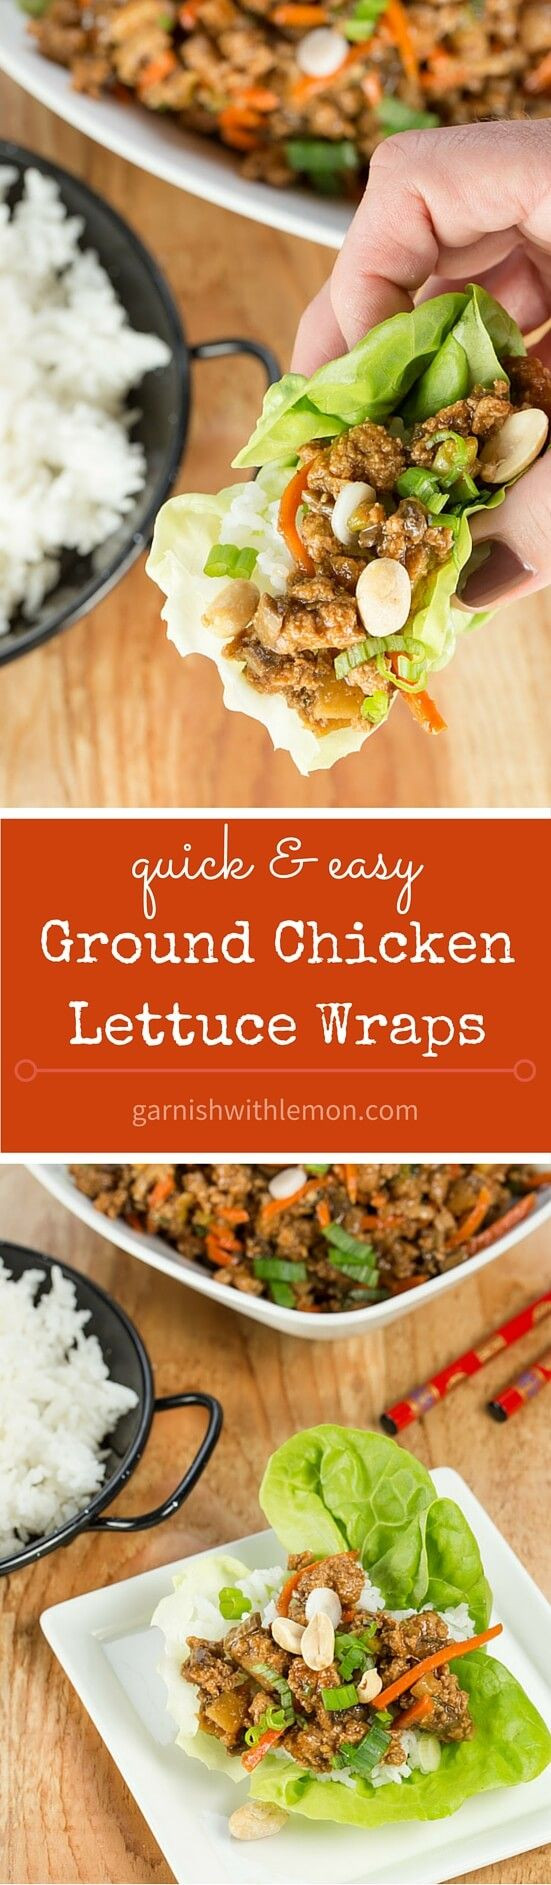 Is Ground Chicken Healthy
 Best 20 Healthy Ground Chicken Recipes ideas on Pinterest